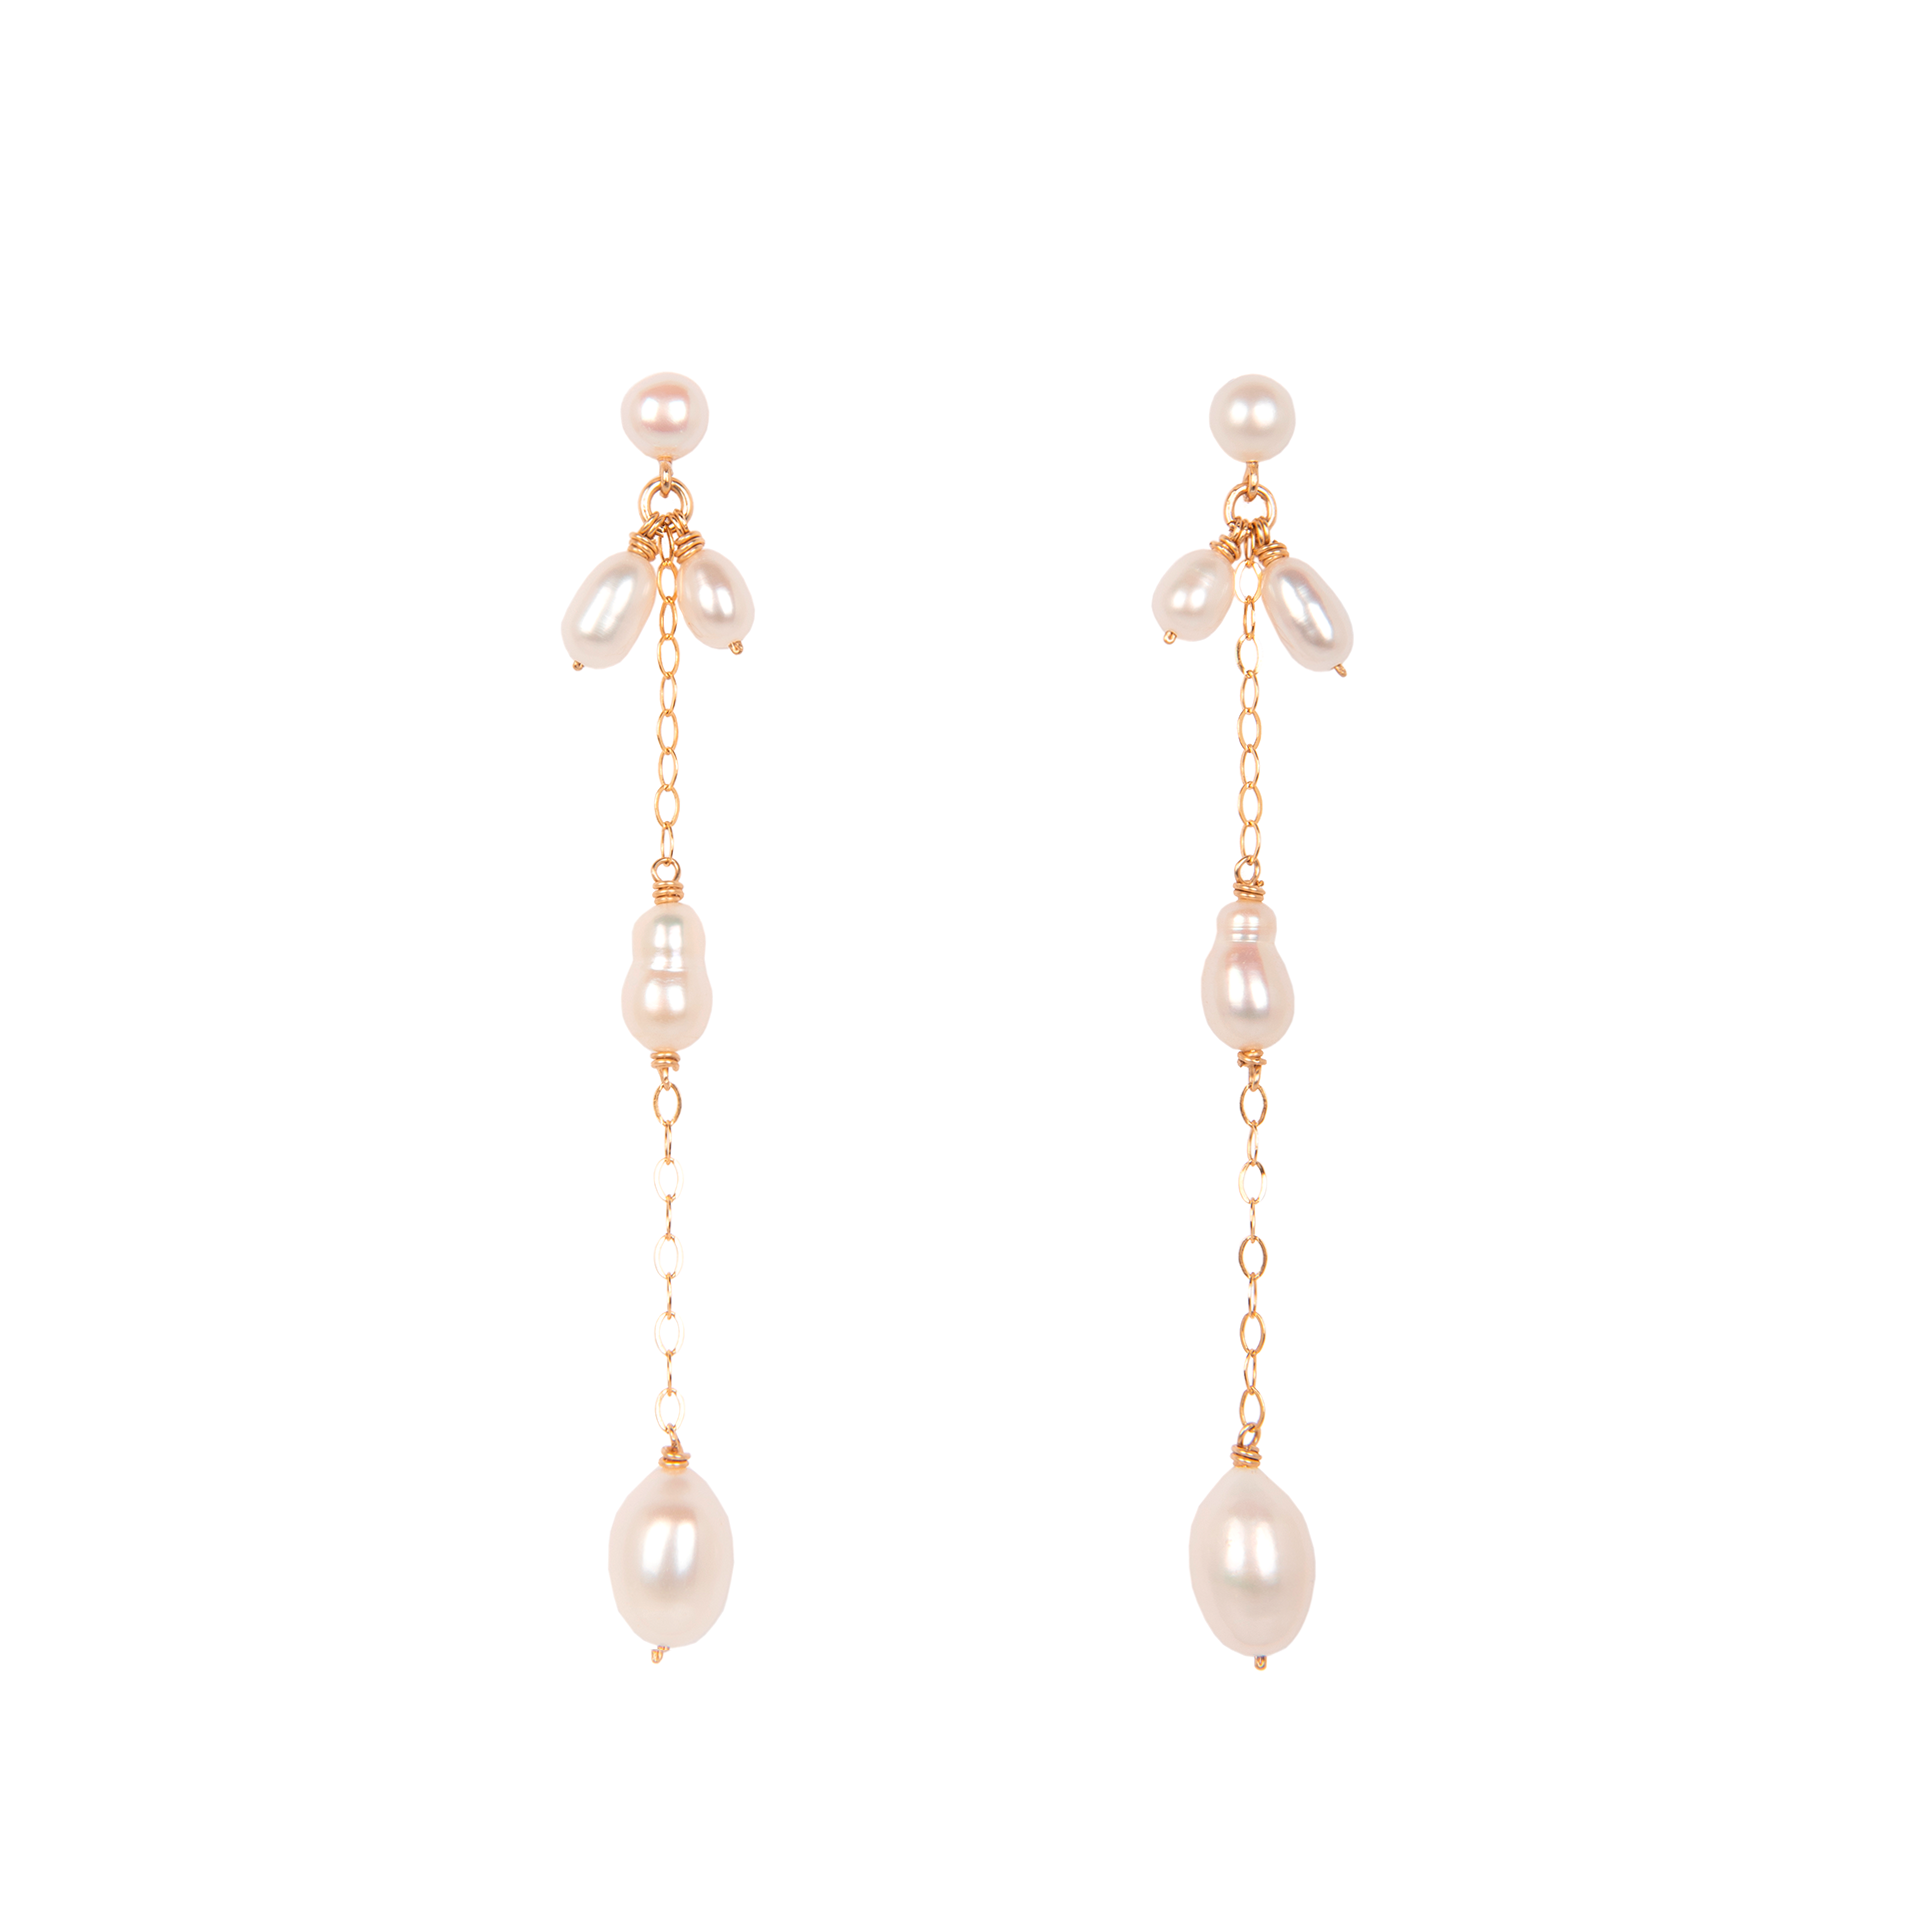 Susan Earrings #4 - Pearls Earrings TARBAY   